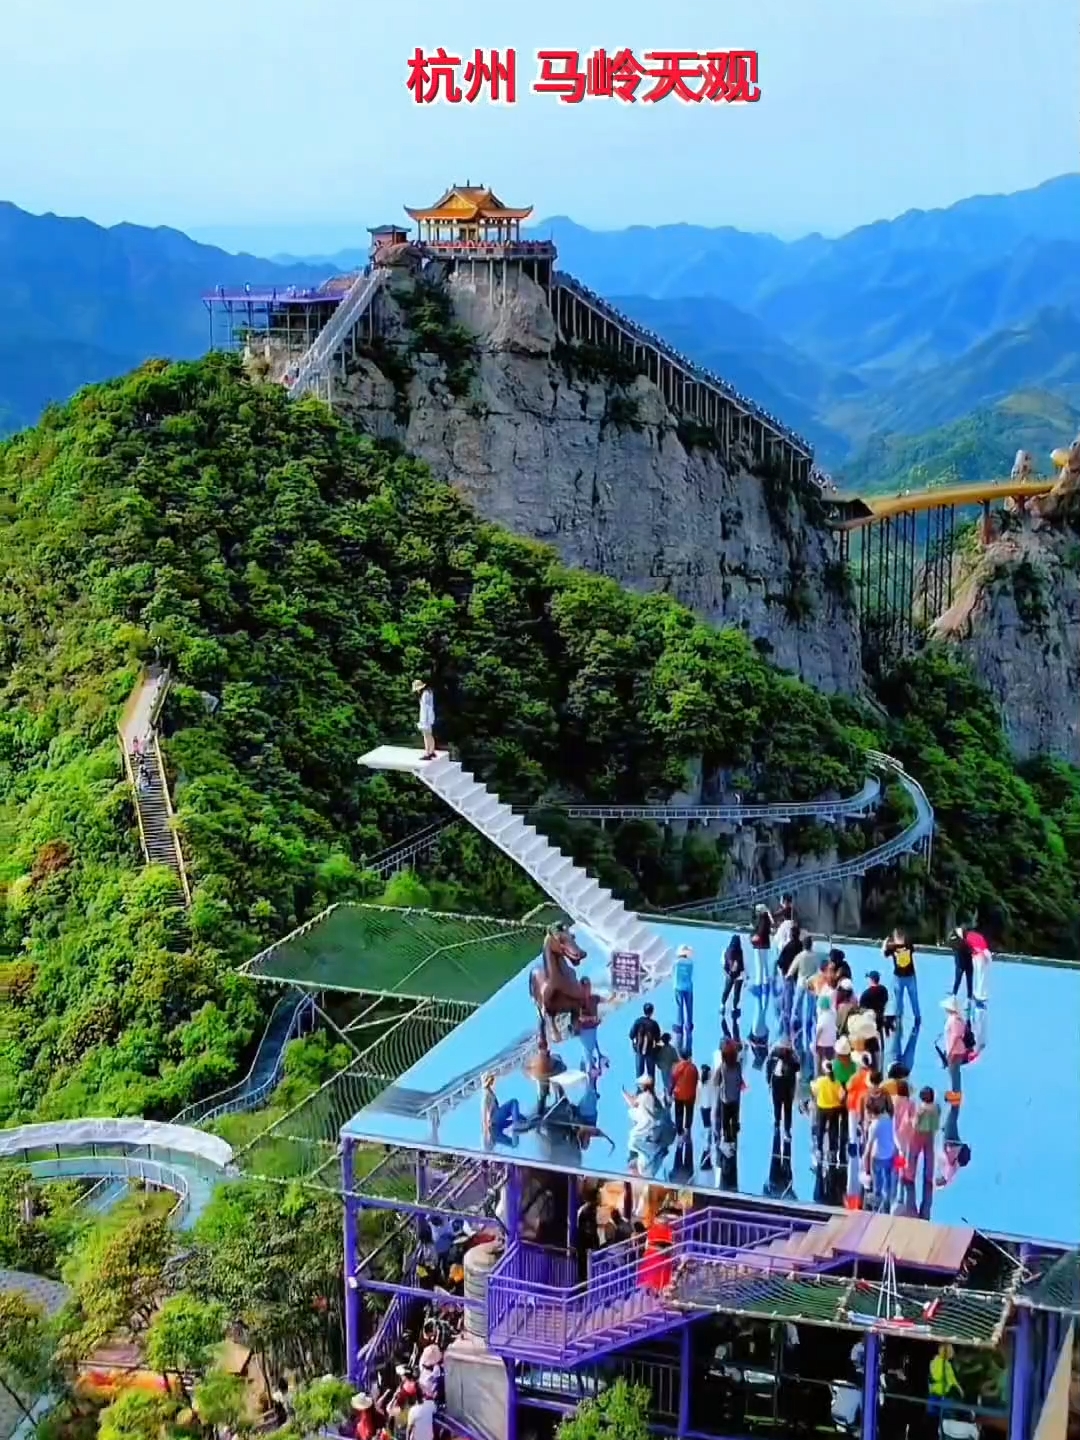 这就是传说中杭州马岭天观，这悬崖峭壁上风景依然很壮观，站在这里使人心旷神怡#旅行过家家 # 周末微旅